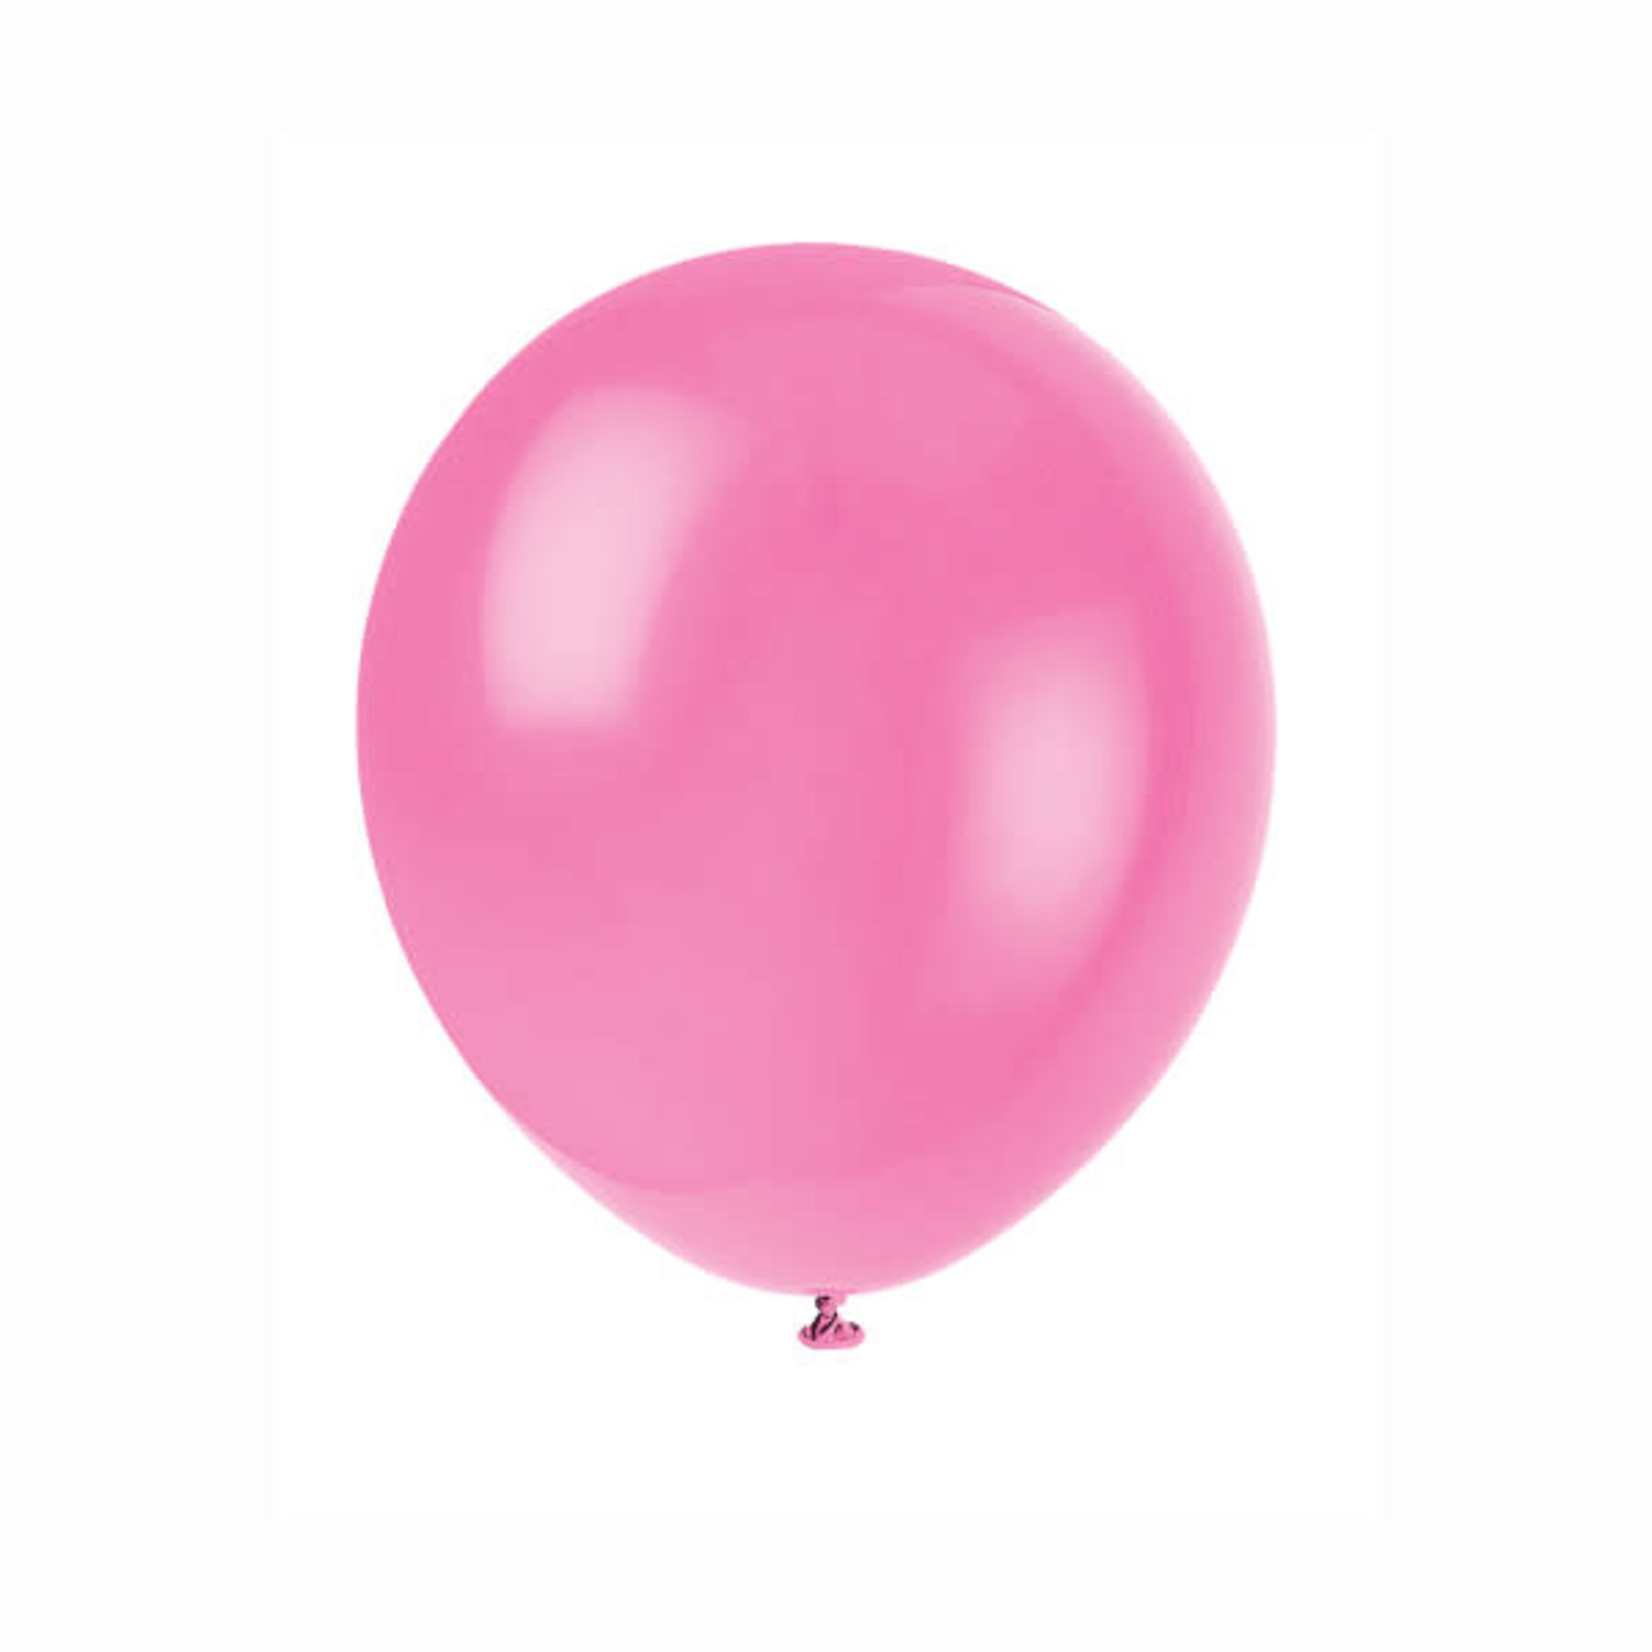 72  12"" Balloons - Bubblegum Pink reg $6.99